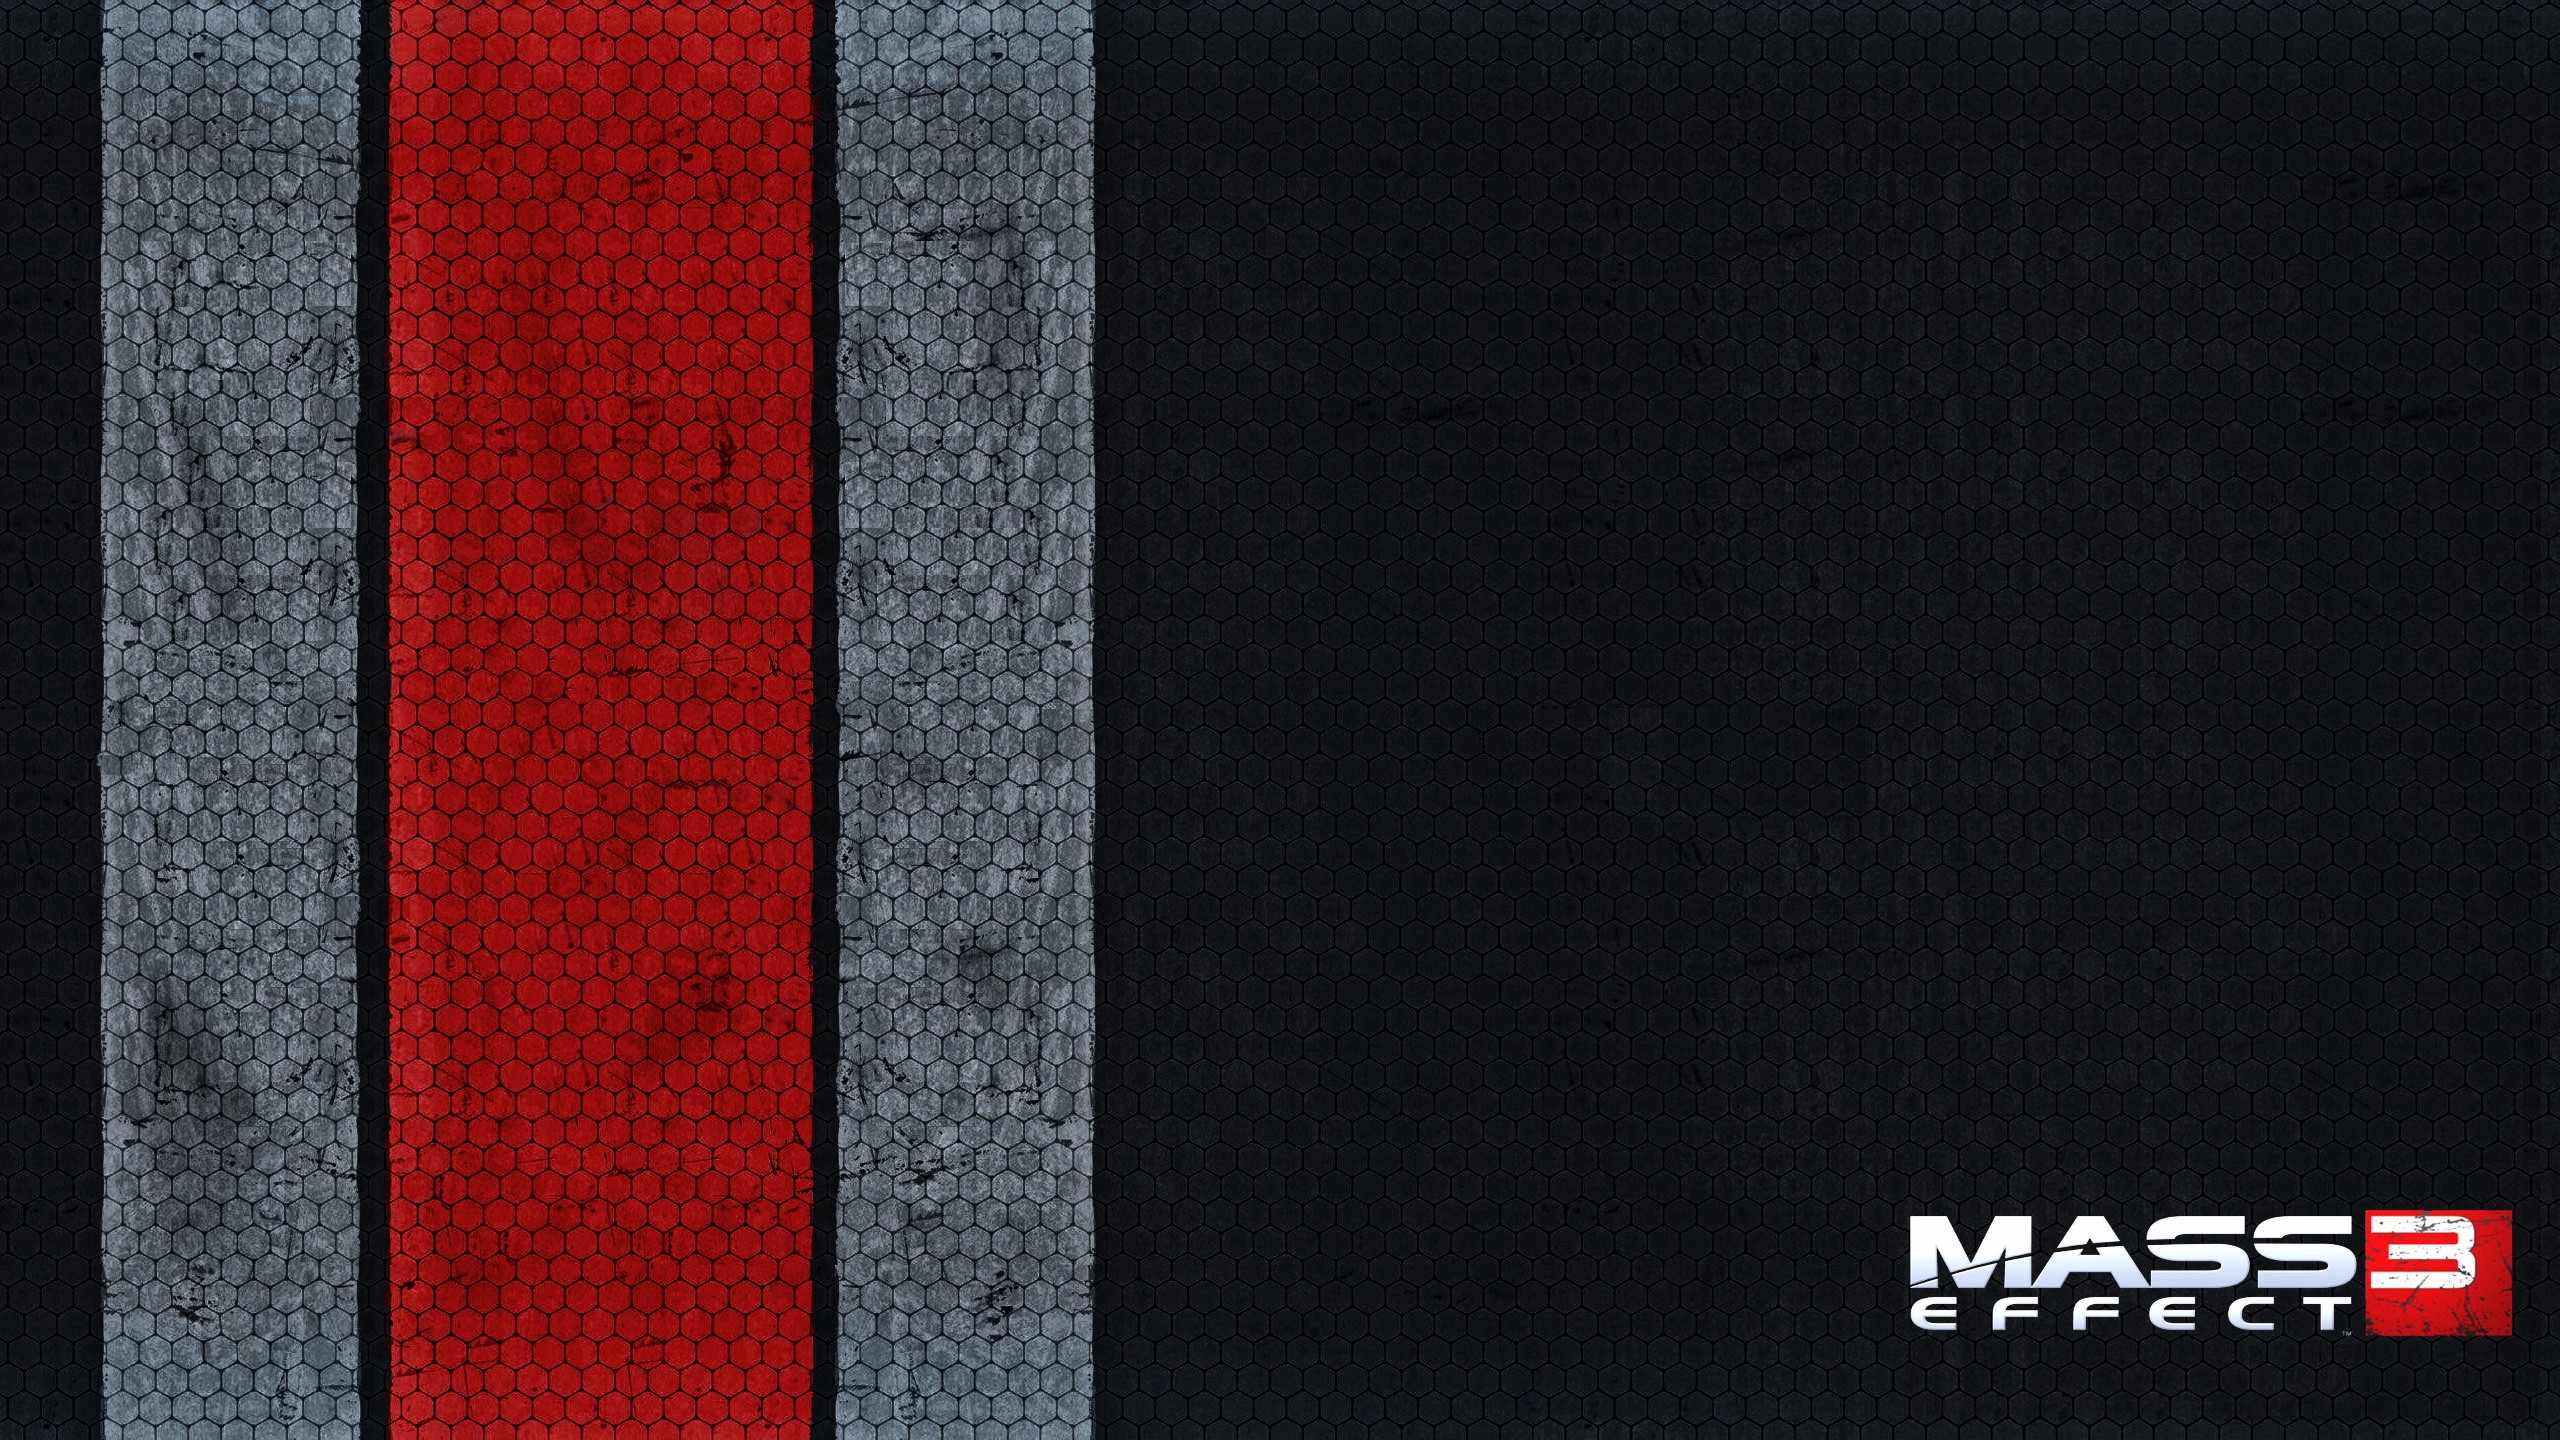 Mass Effect N7 Mass Effect 3 Video Games 2560x1440